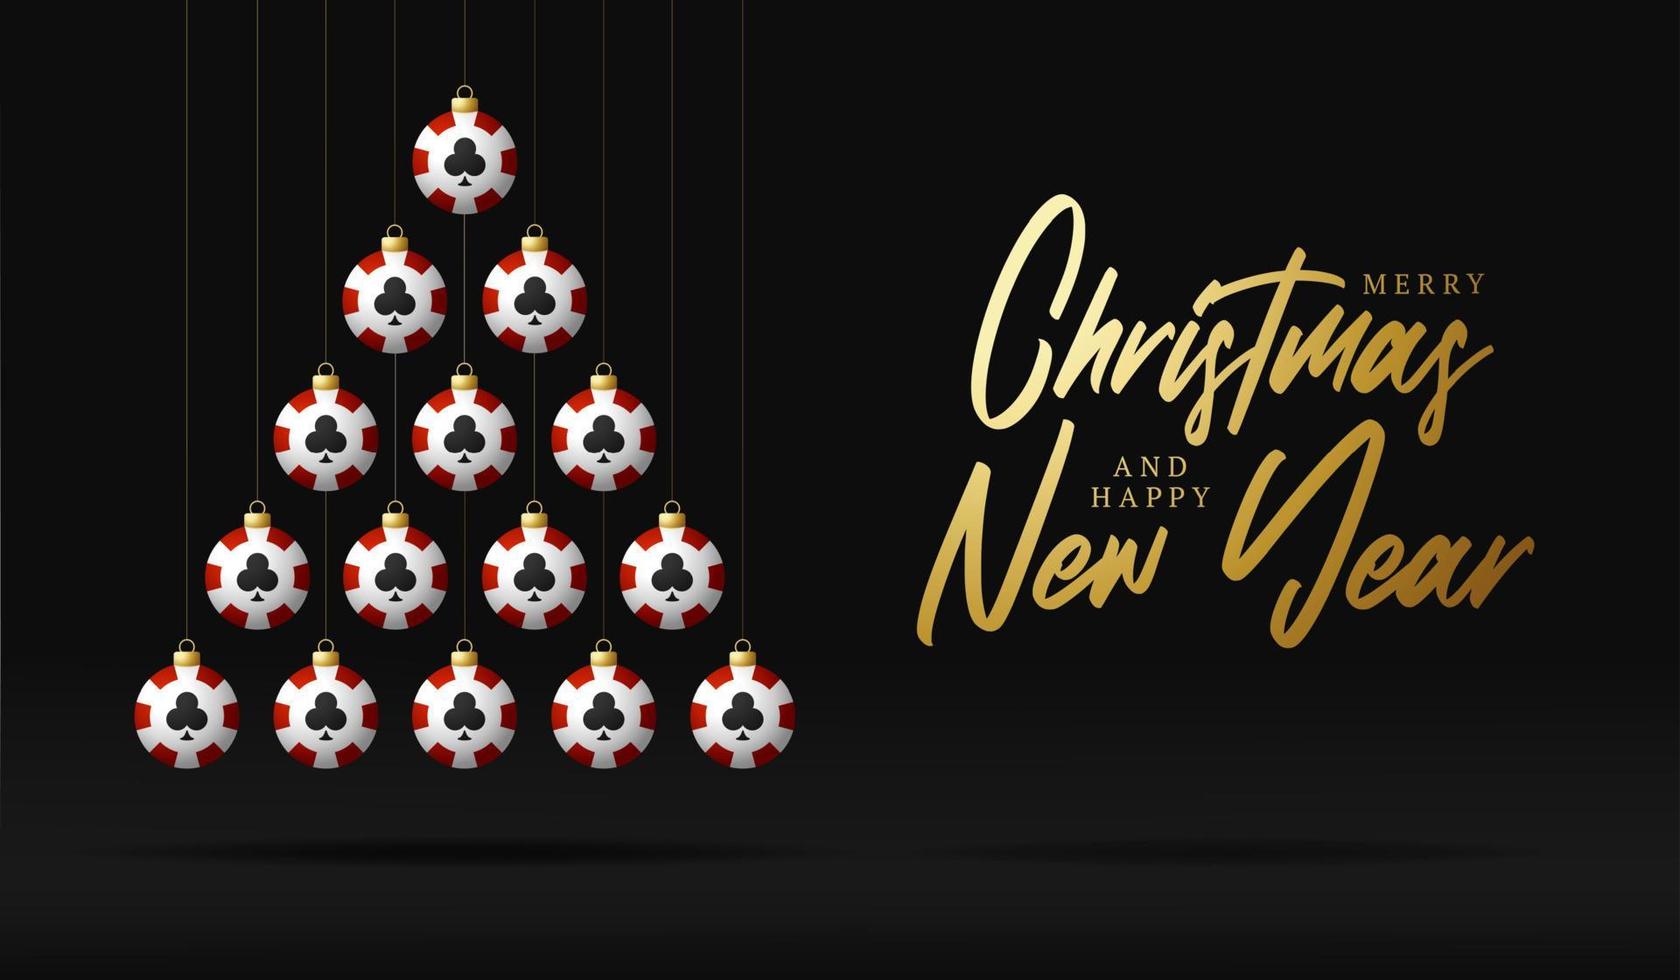 Weihnachts- und Neujahrsgrußkarte Casino-Chip-Flitterbaum. Kreativer Weihnachtsbaum von Pokerchip auf schwarzem Hintergrund für Weihnachten und Neujahrsfeier. Sportgrußkarte vektor